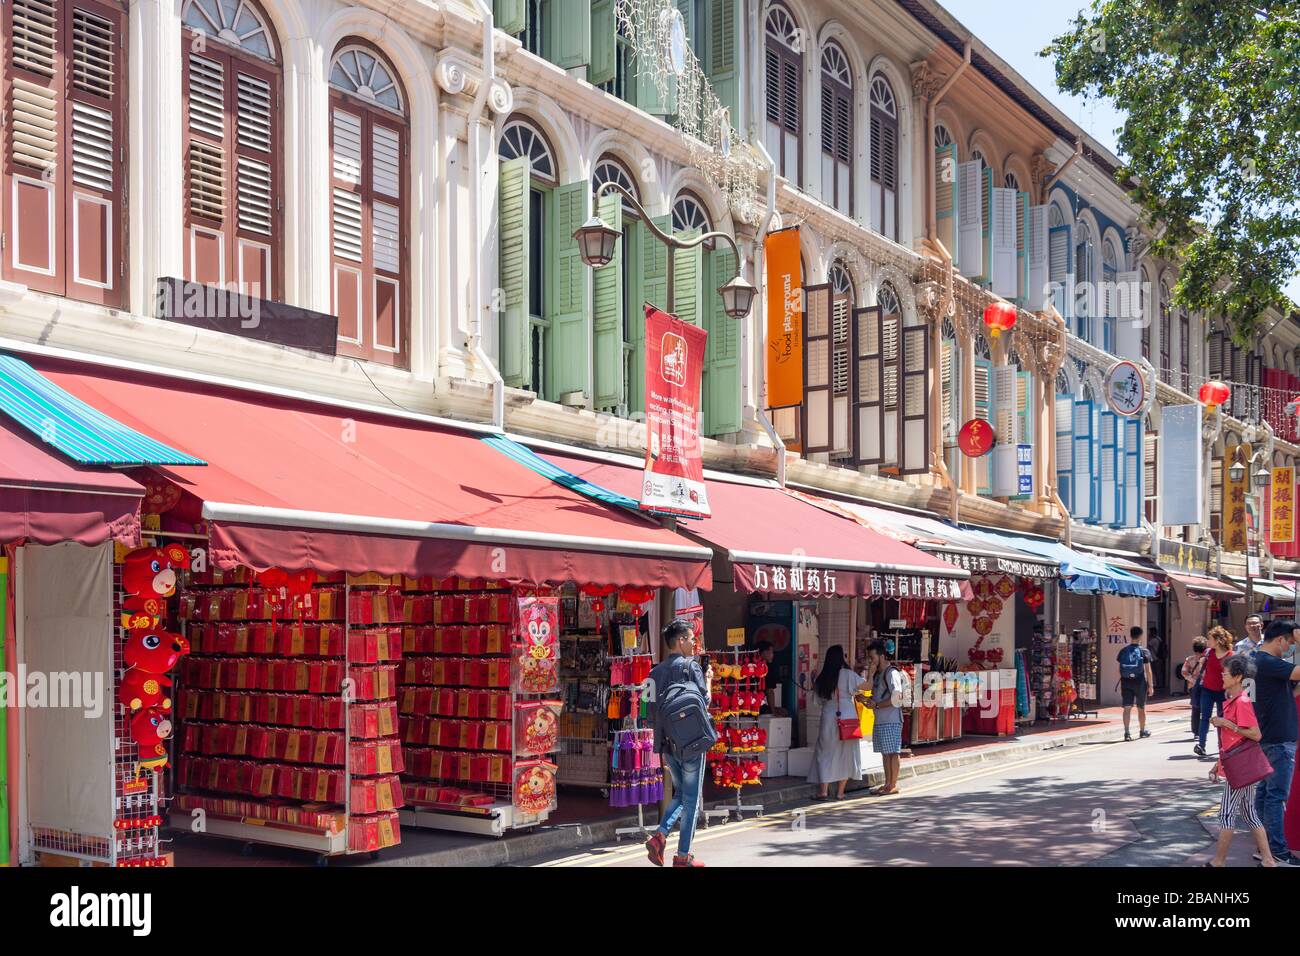 Casas de comercio coloniales, Sago Street, Chinatown, Zona Central, República de Singapur Foto de stock